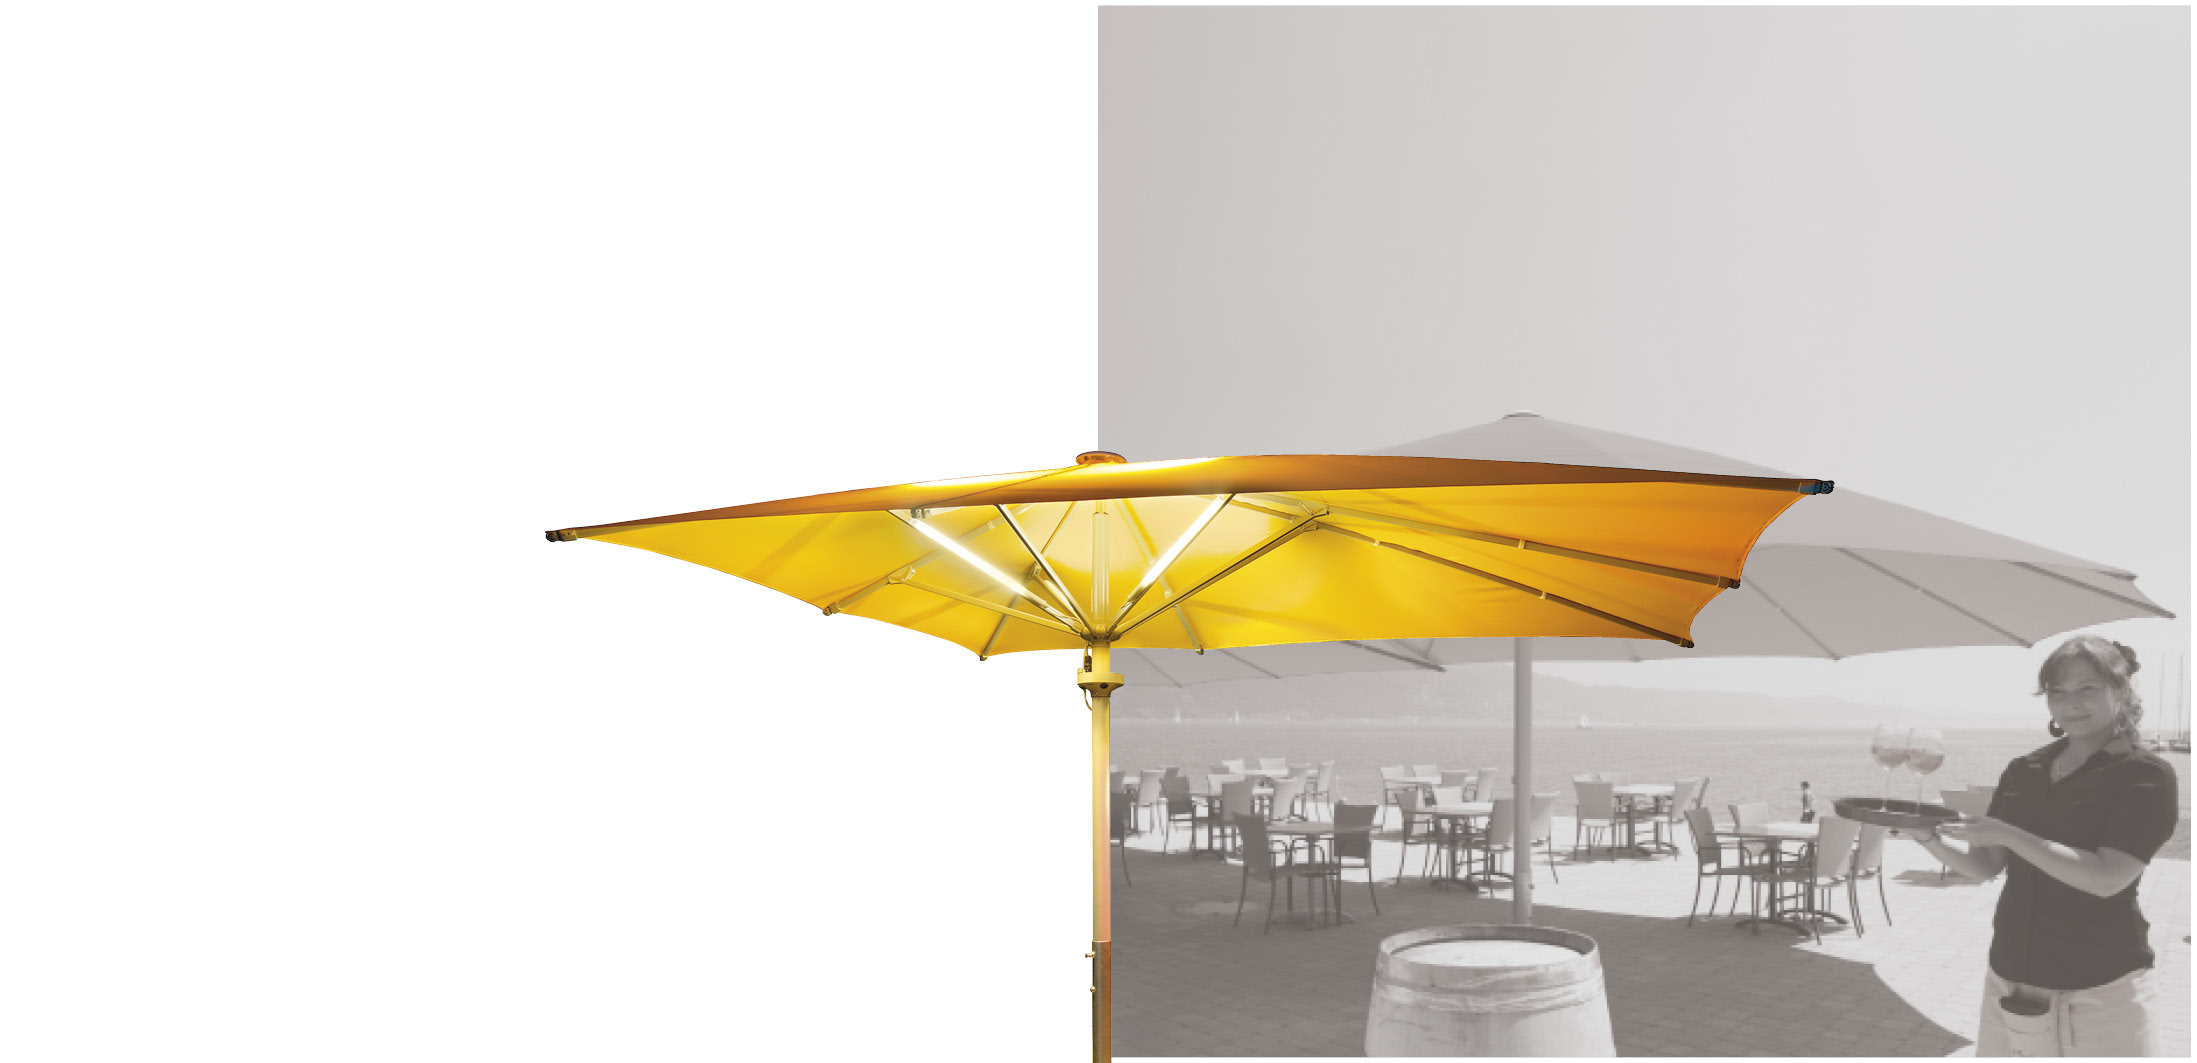 Sonnenschirme für Ihr Gastro- und Hotelgewerbe. Individuell bedruckt mit Logo oder vollflächig. Individuell ausgestattet mit Licht, Heizung und Lautsprechern.